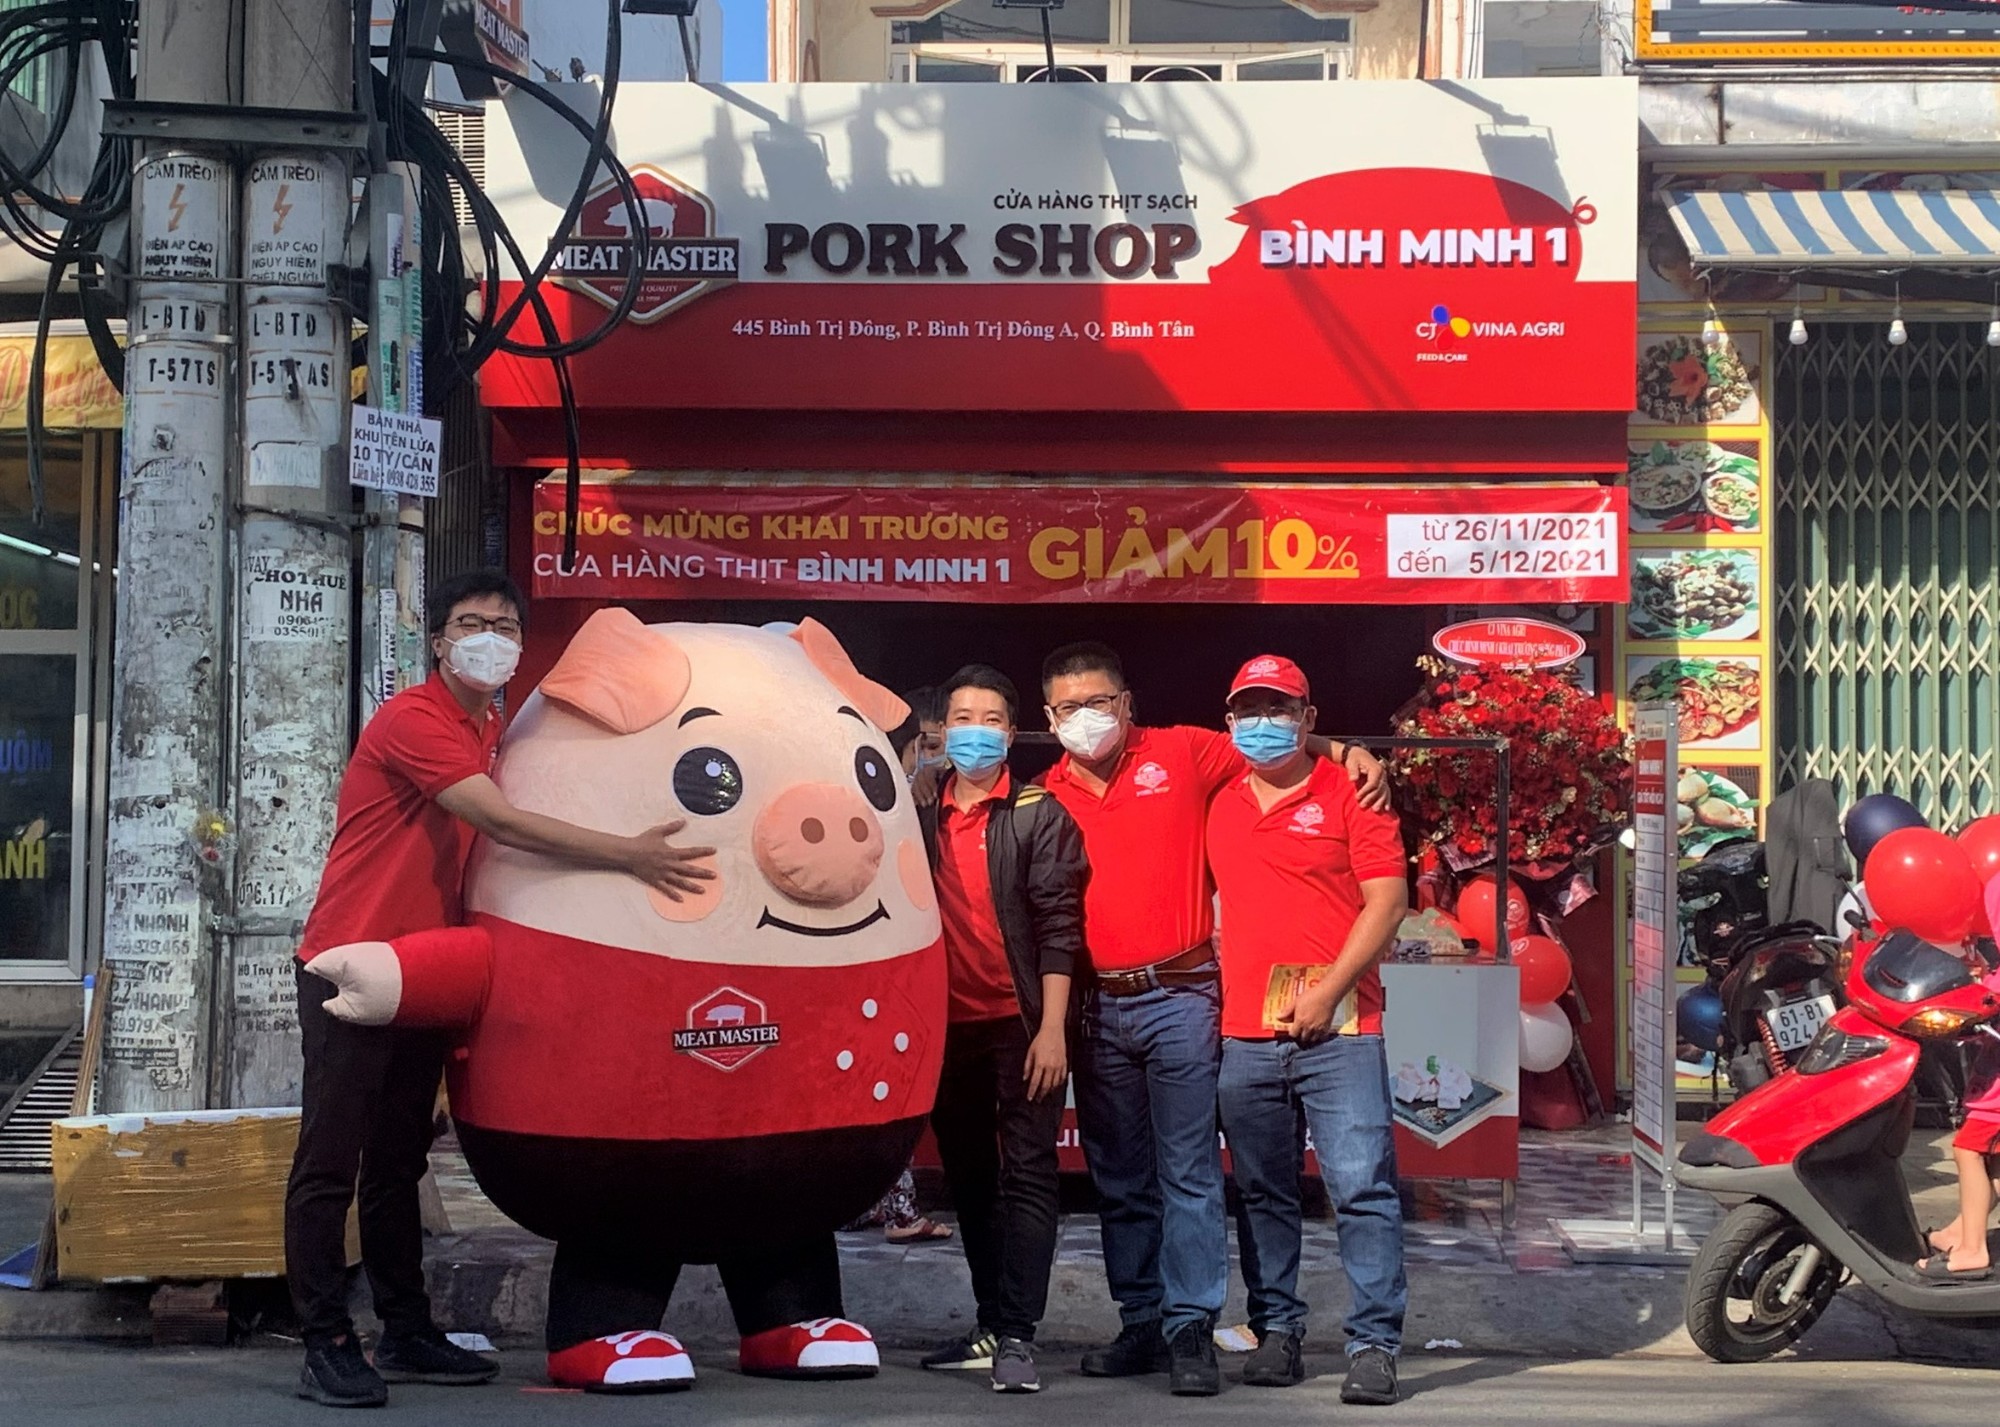 Pork Shop Bình Minh 1: 445 Bình Trị Đông, Phường Bình Trị Đông, Quận Bình Tân.